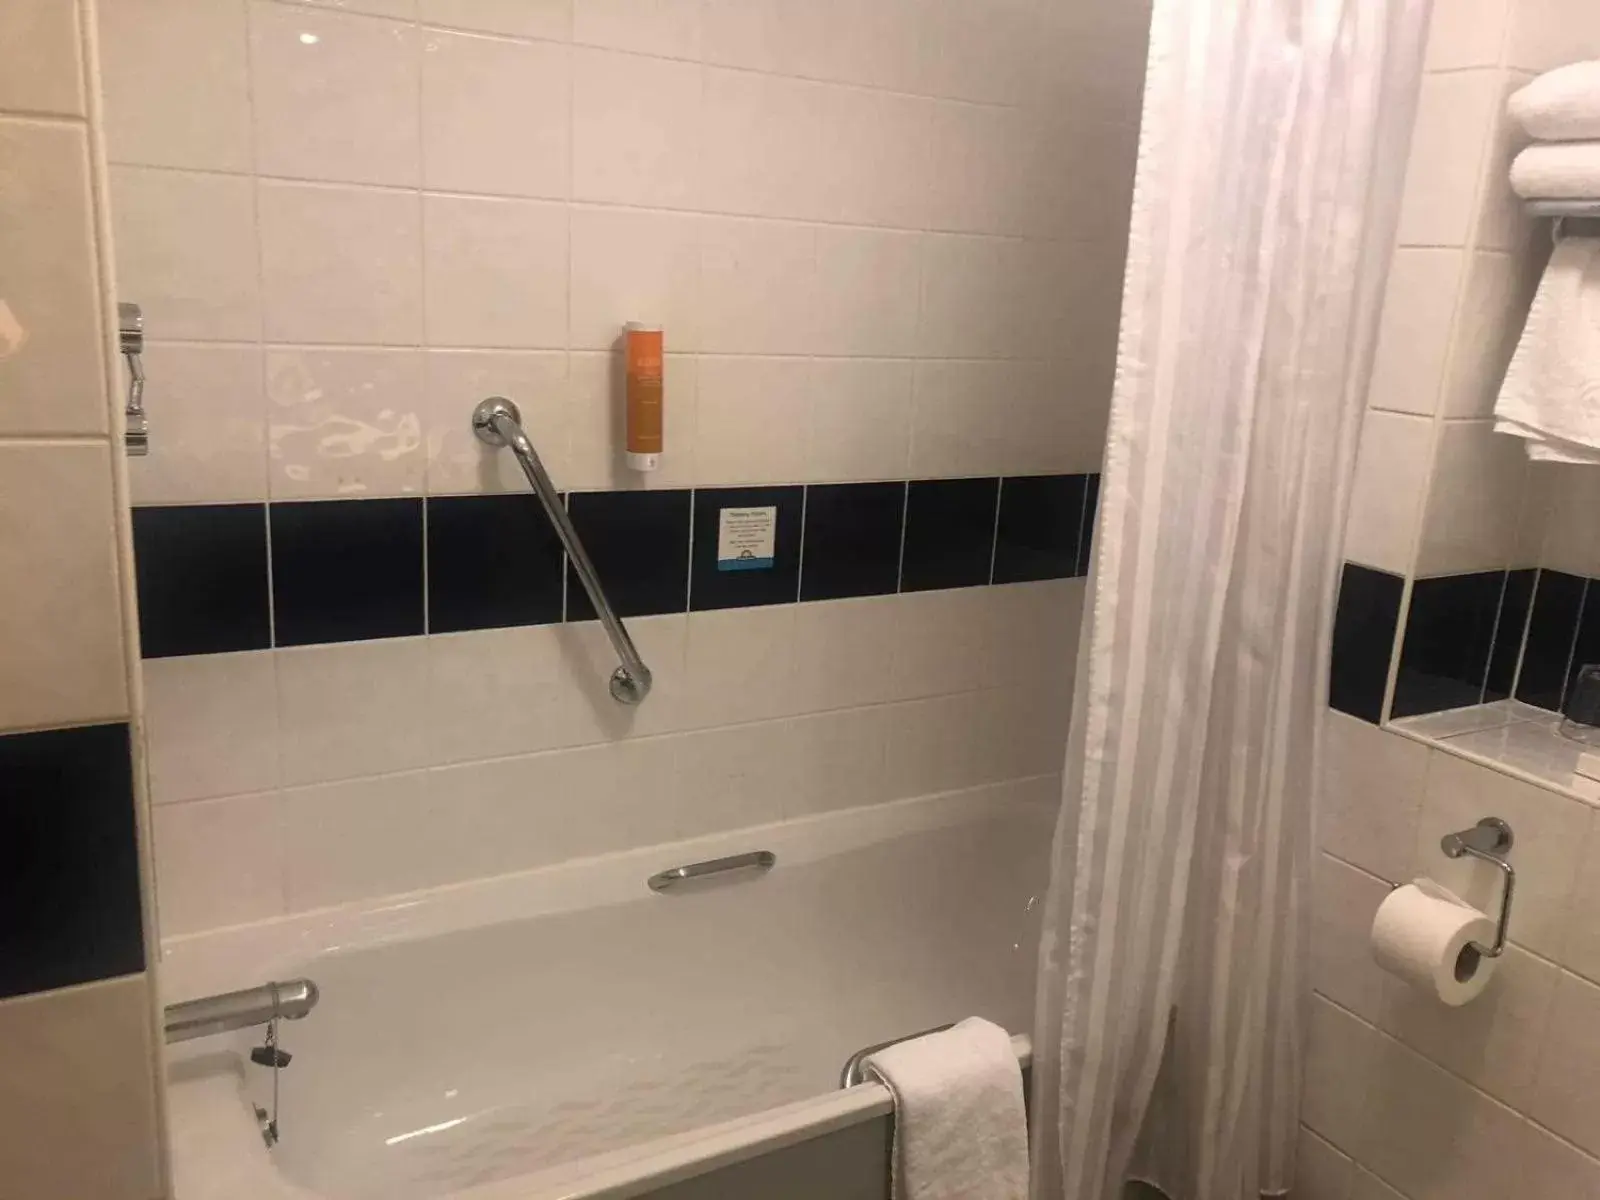 Bathroom in Days Inn Hotel Leicester